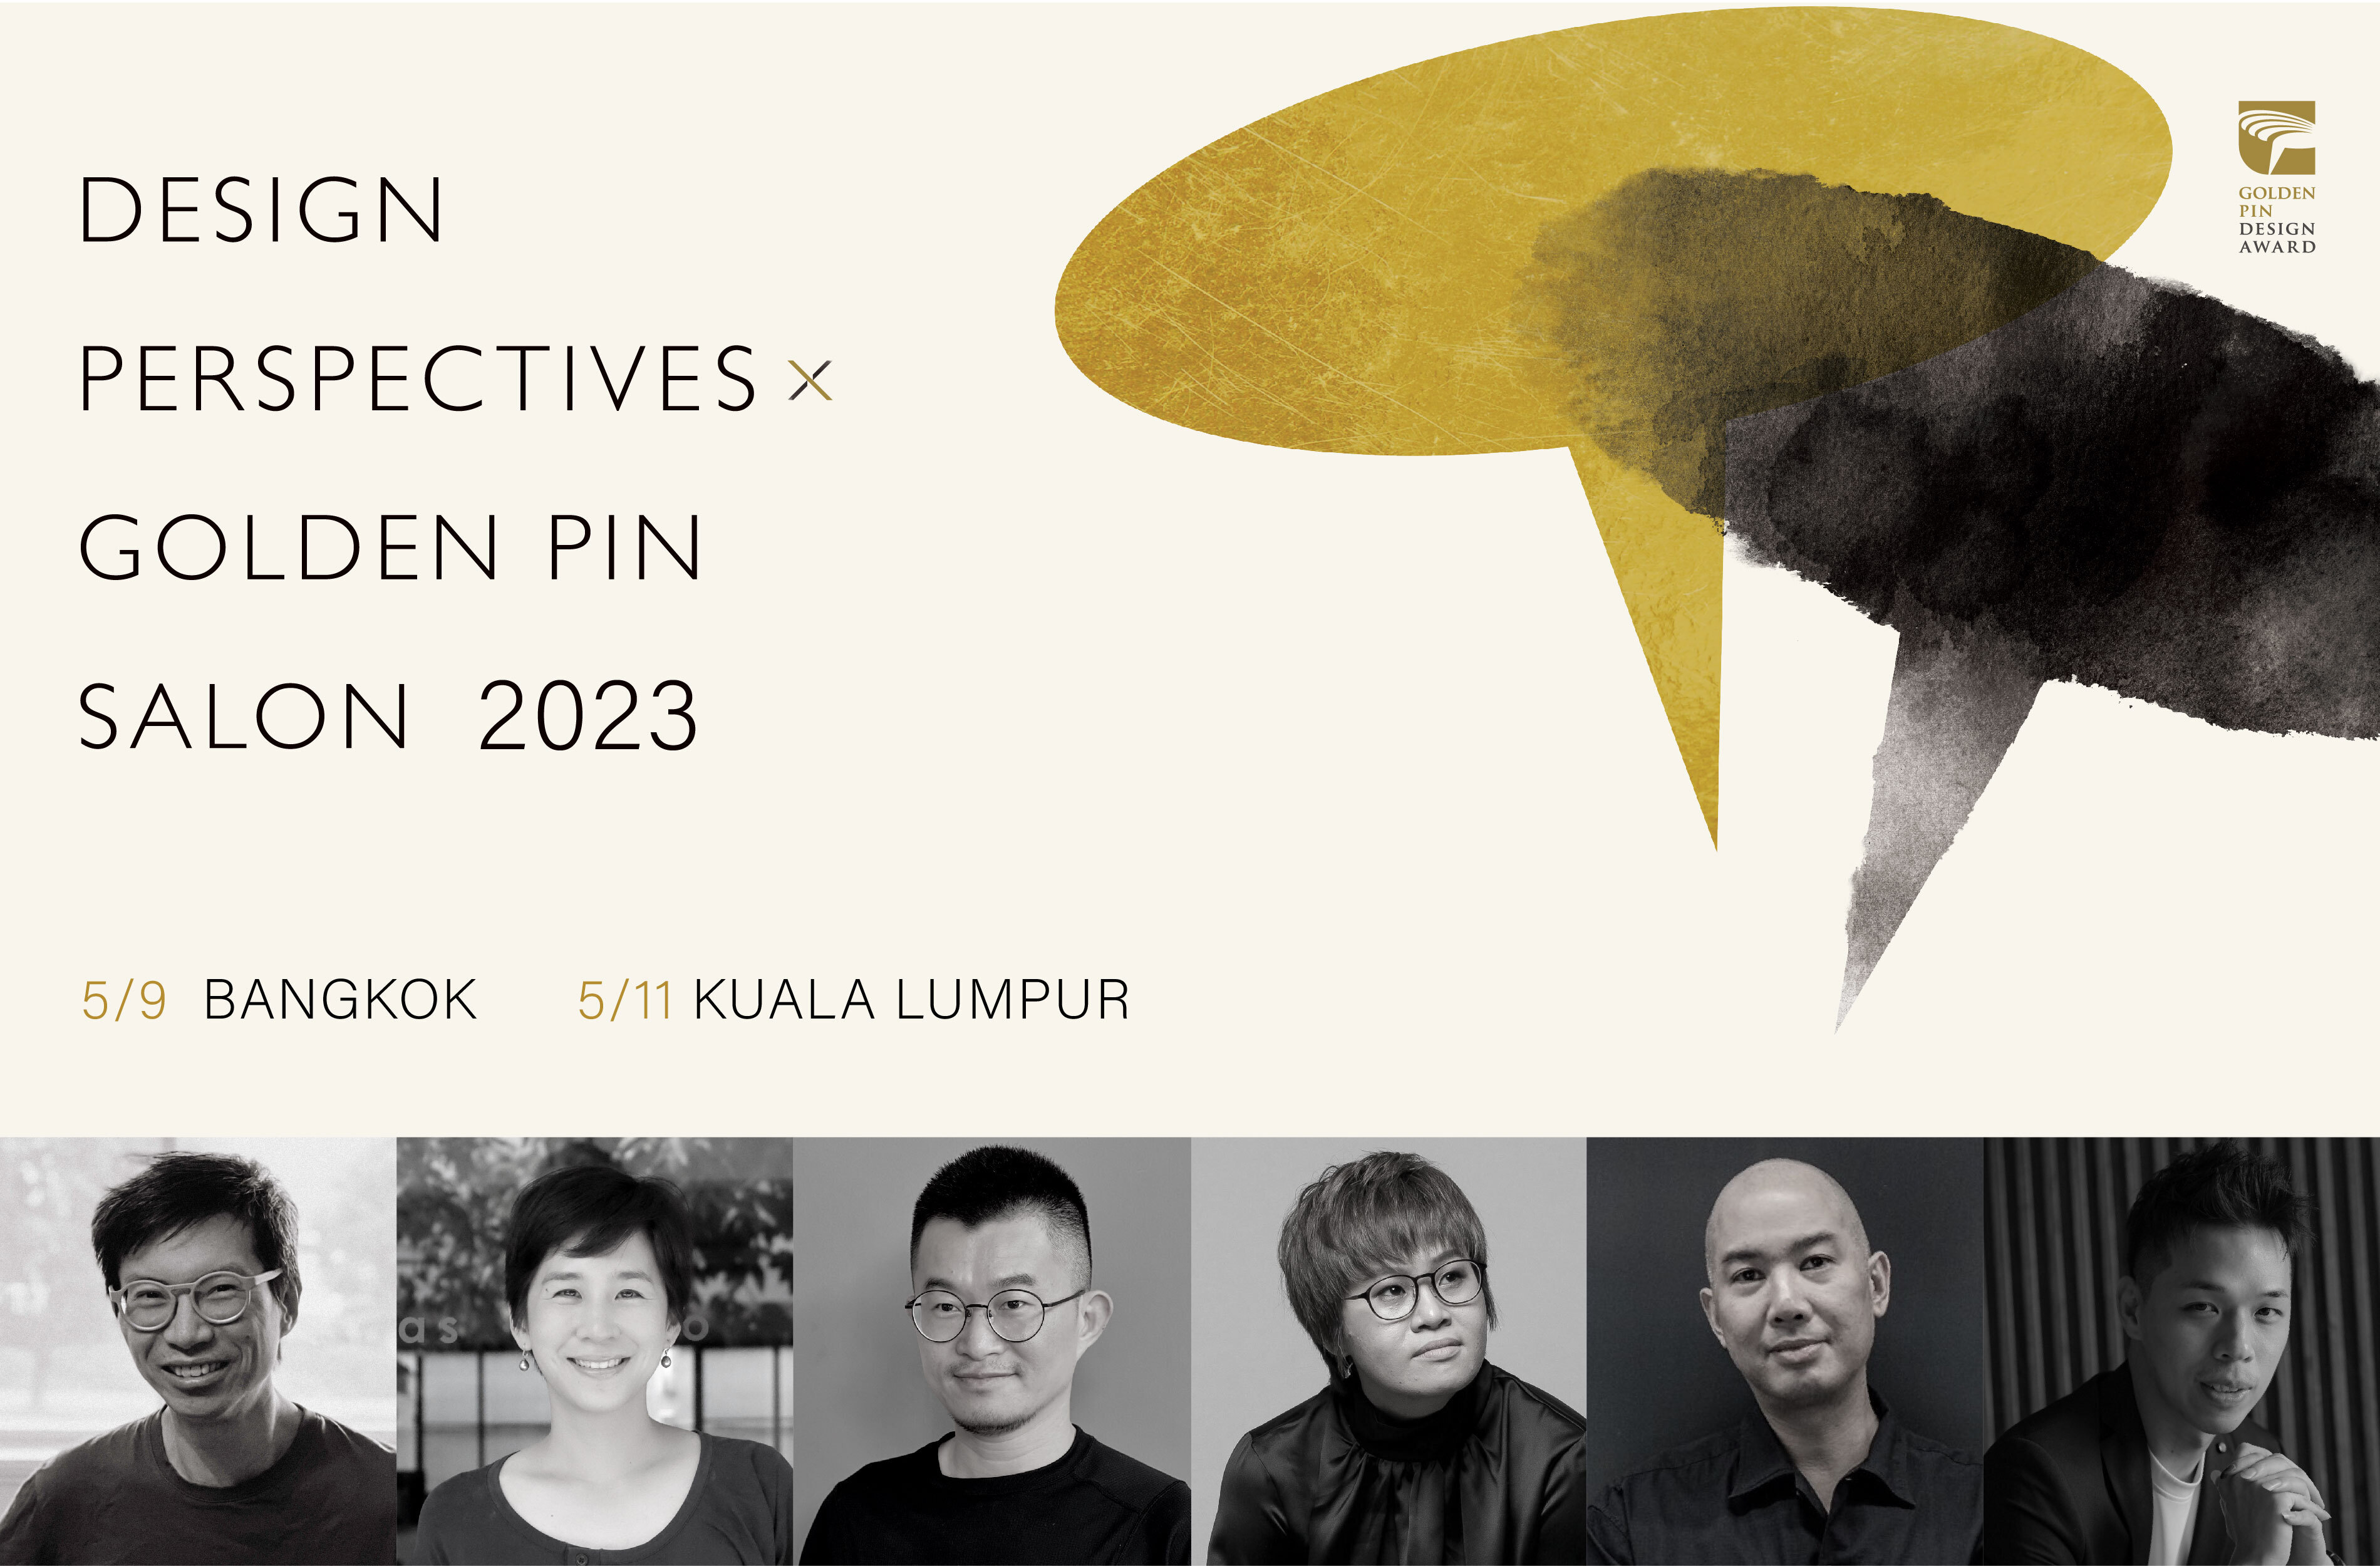 Golden Pin Salon 2023 is heading to Bangkok and Kuala Lumpur in May!